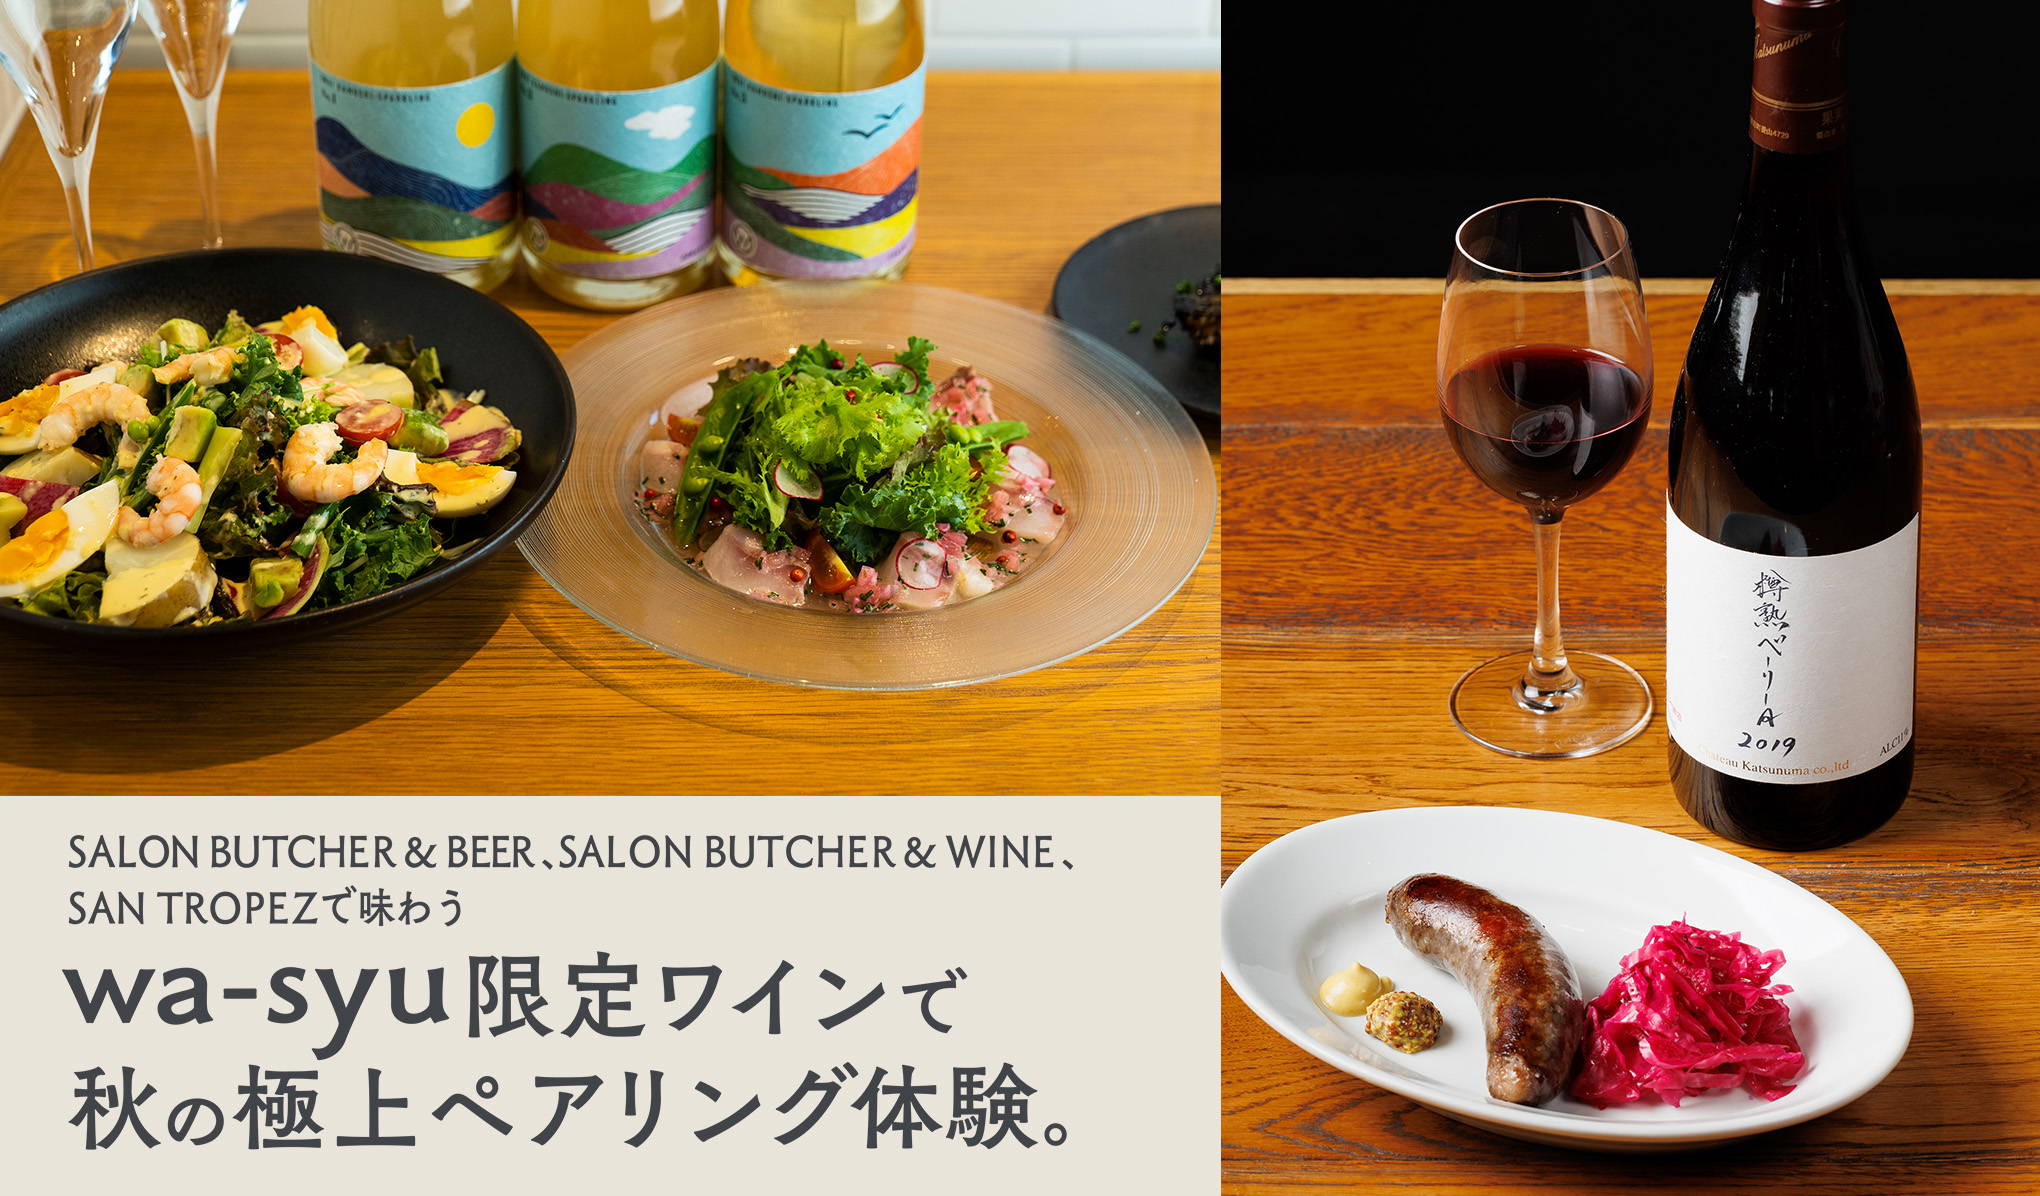 ジュングループのレストランで味わい。wa-syu限定ワインで秋の極上ペアリング体験。